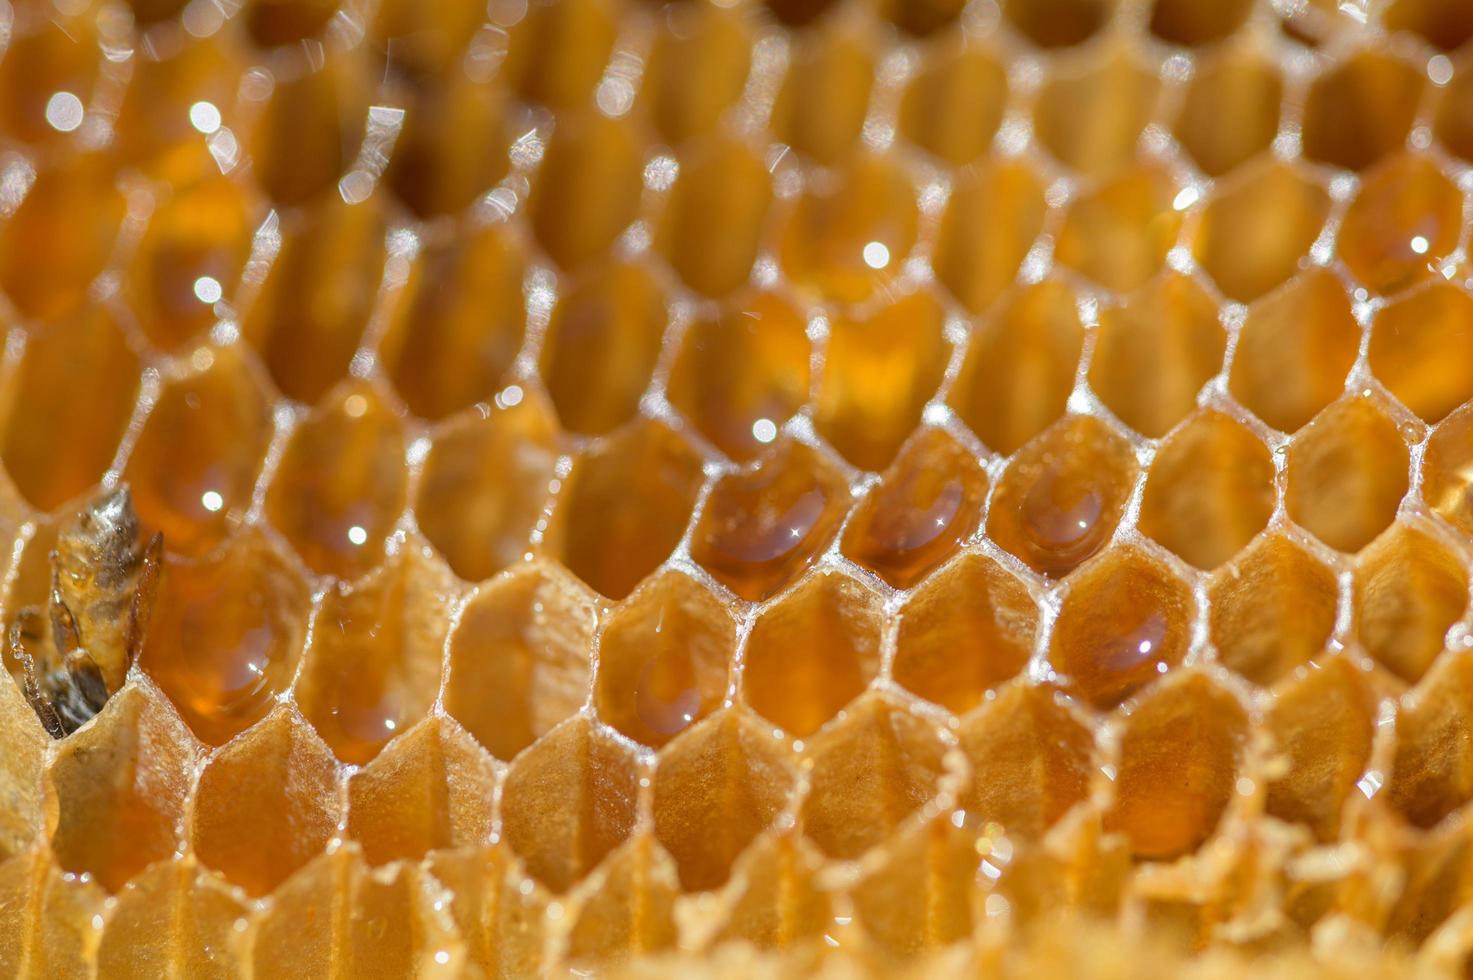 Macro, honeycomb and wild honey photo